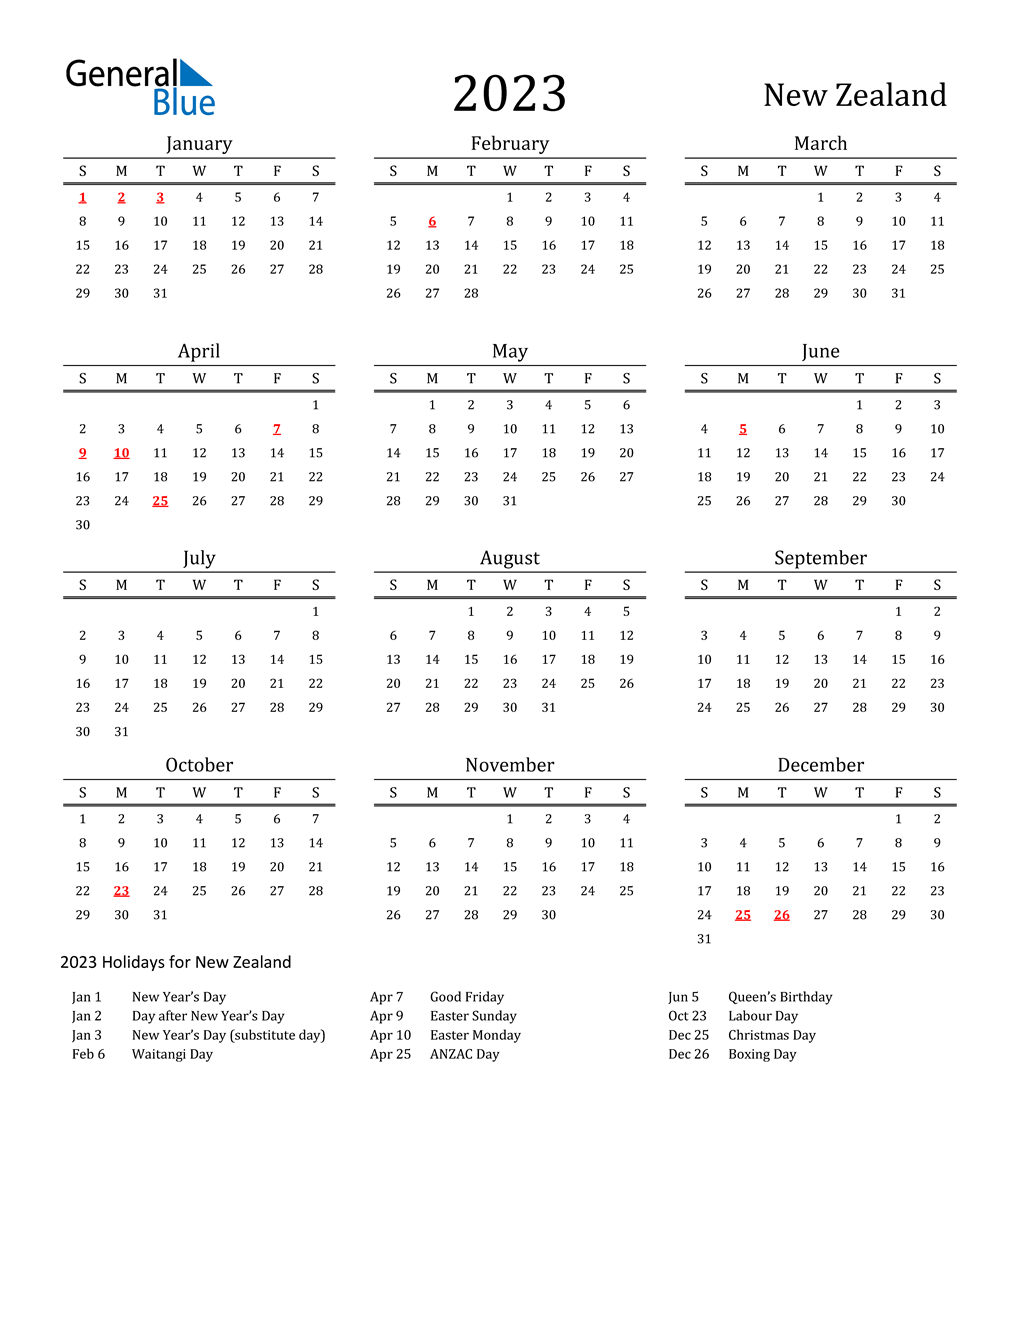 new-zealand-public-holidays-2023-calendar-get-latest-2023-news-update